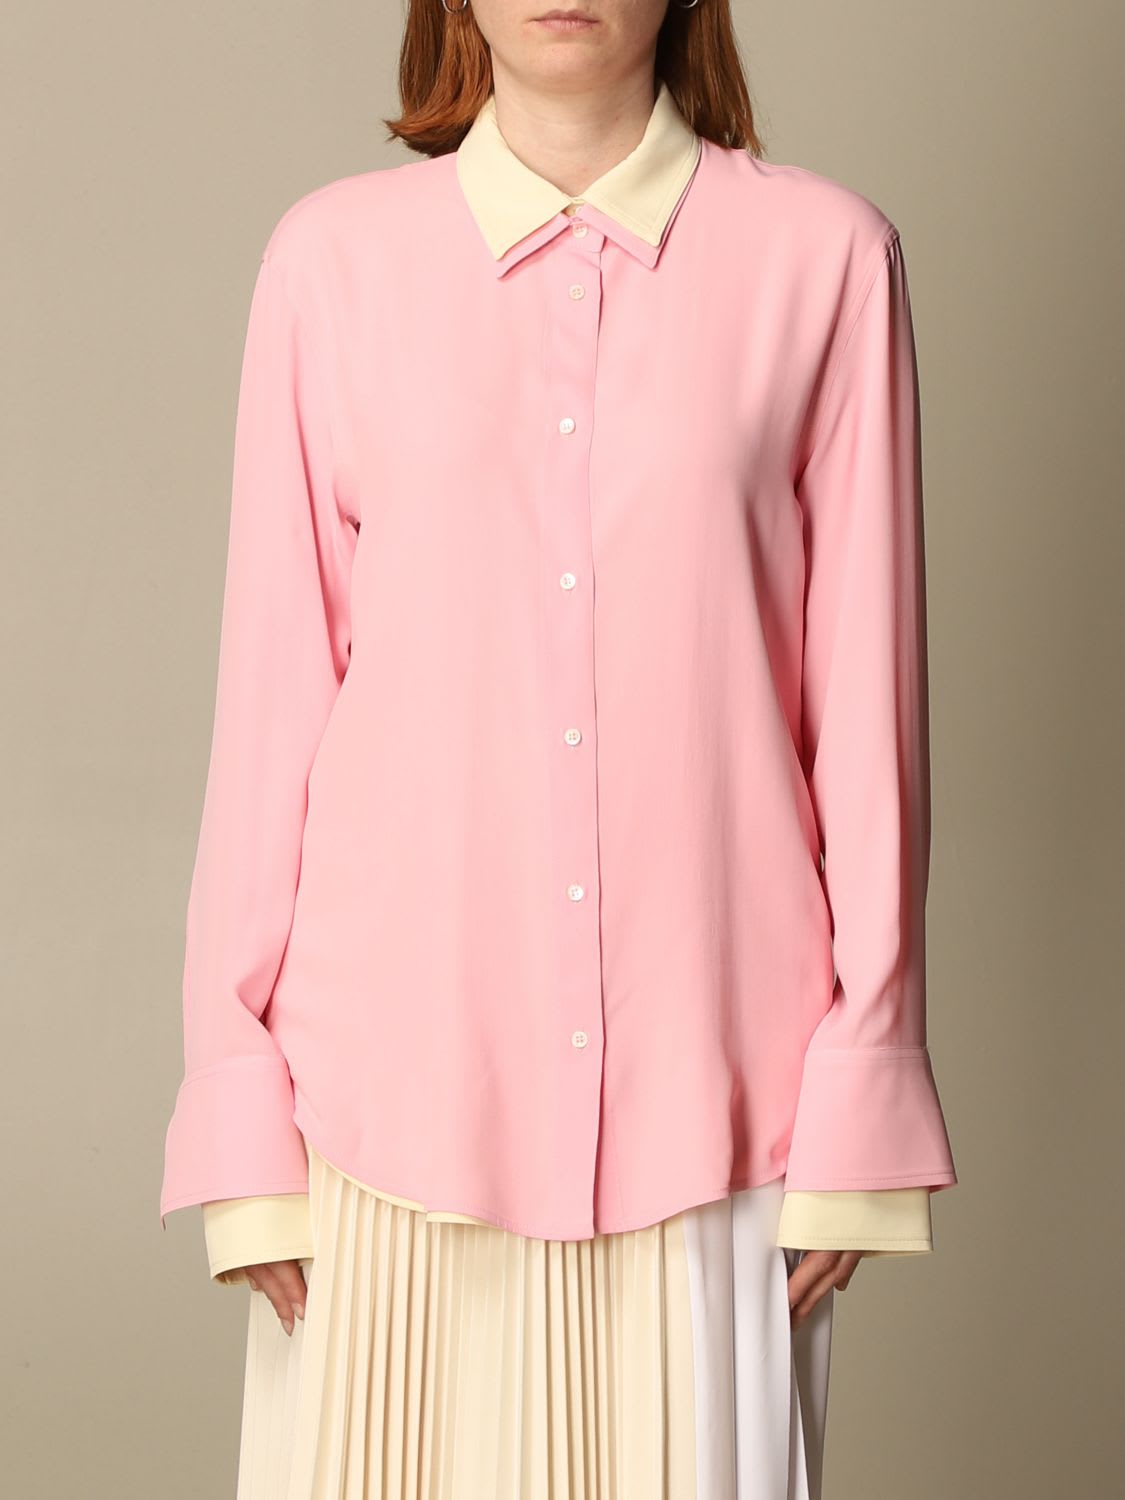 N.21 N° 21 Shirt N°21 Relaxed Fit Shirt In Silk Blend